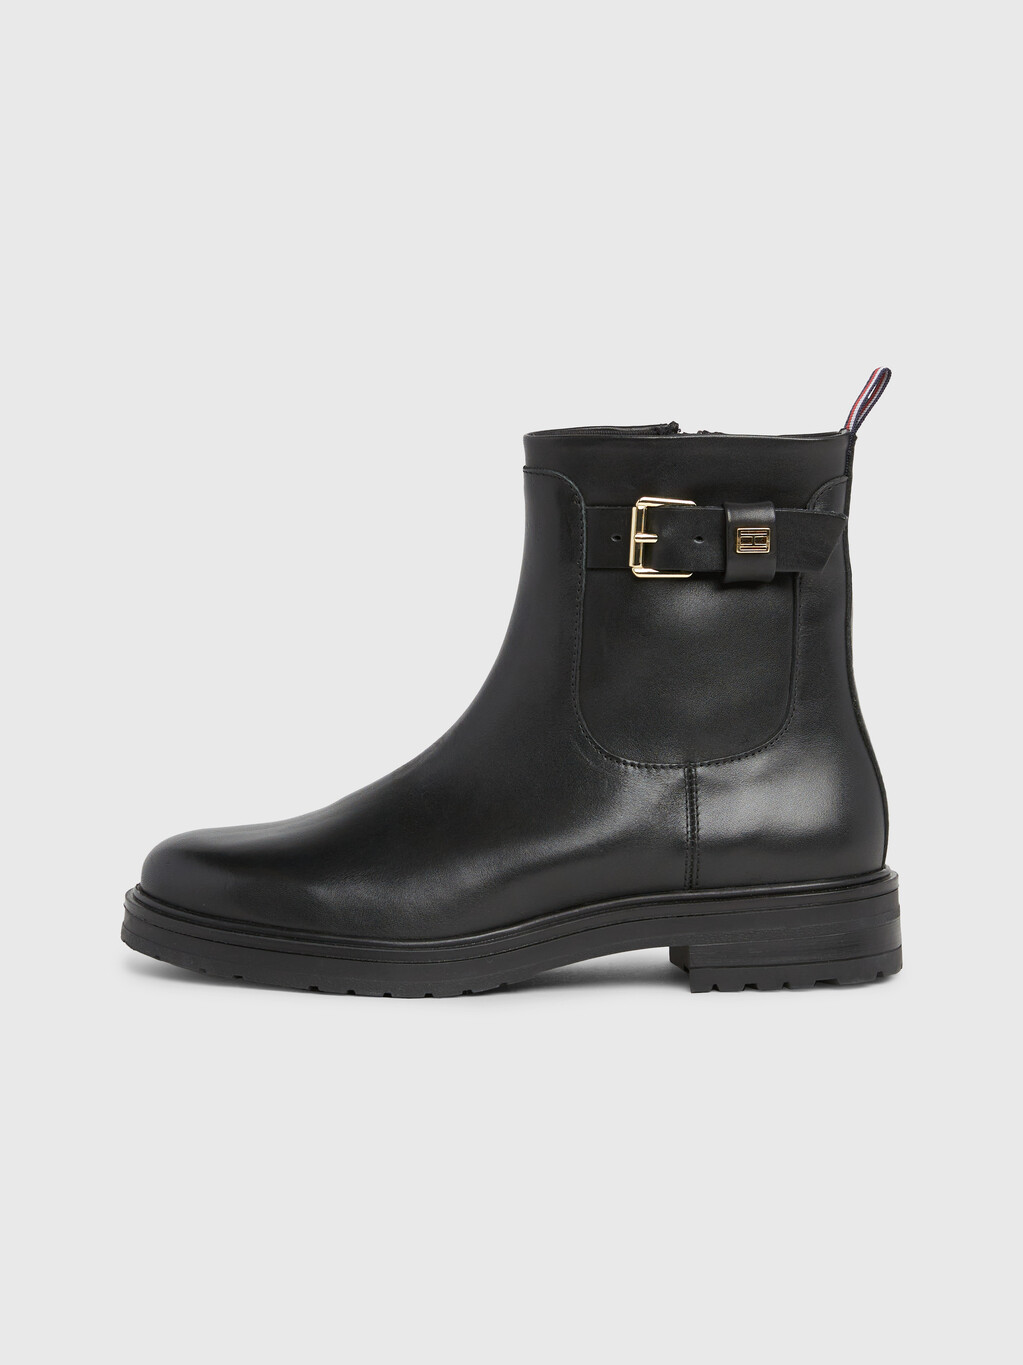 Belt Detail Leather Boots, Black, hi-res